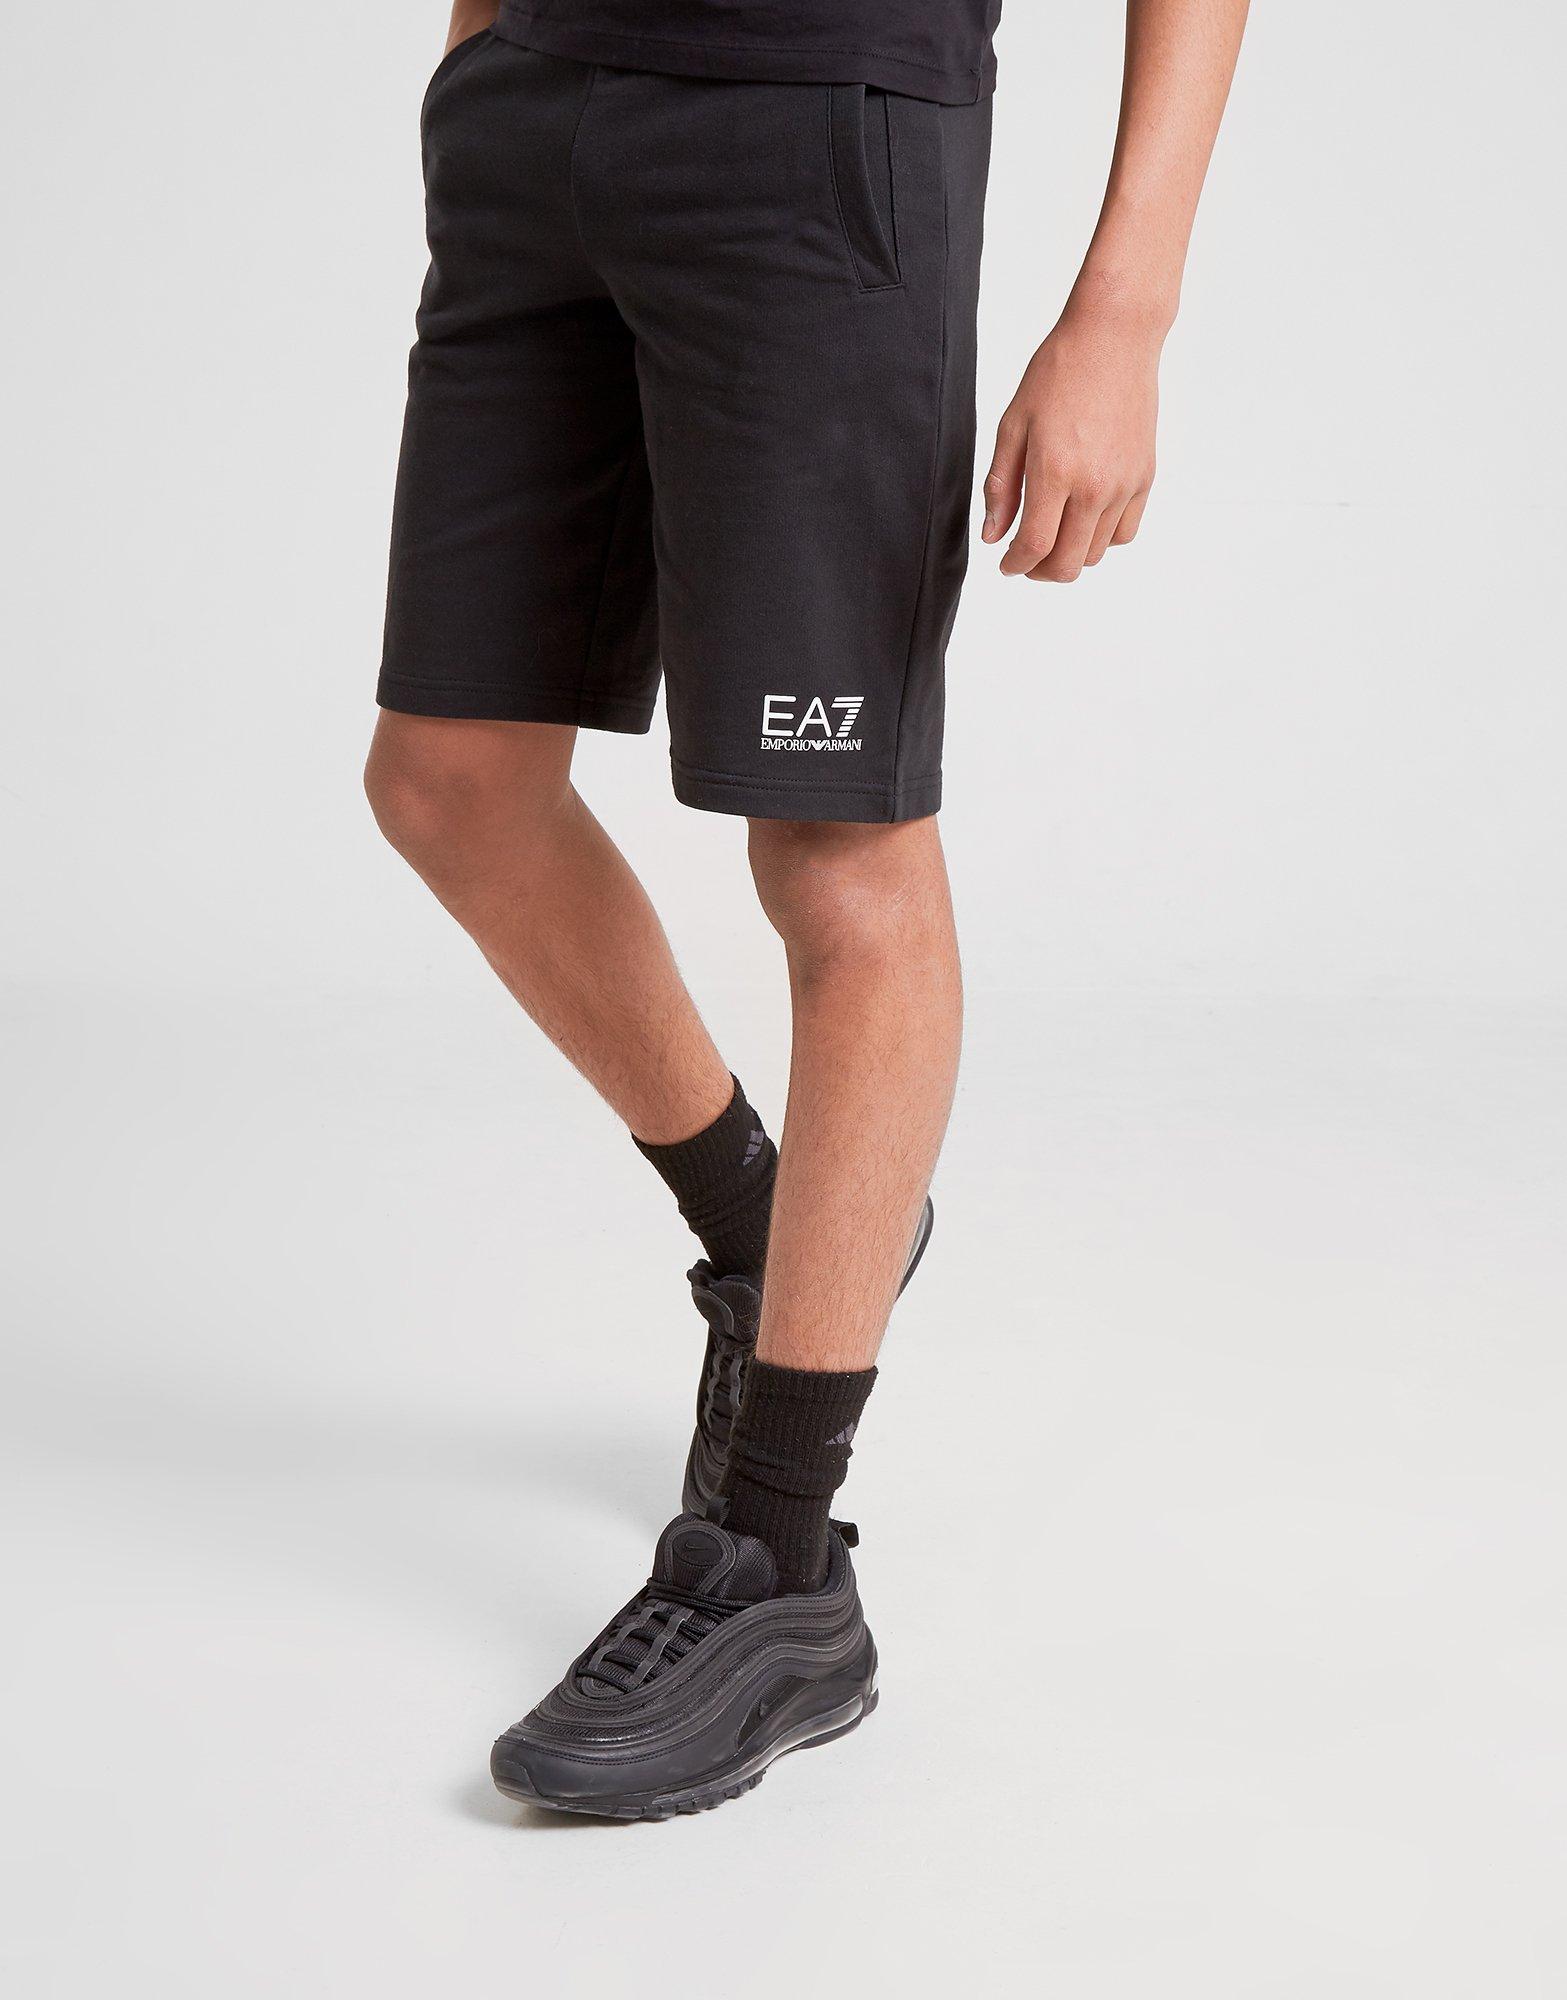 Emporio Armani EA7 Core Fleece Shorts 